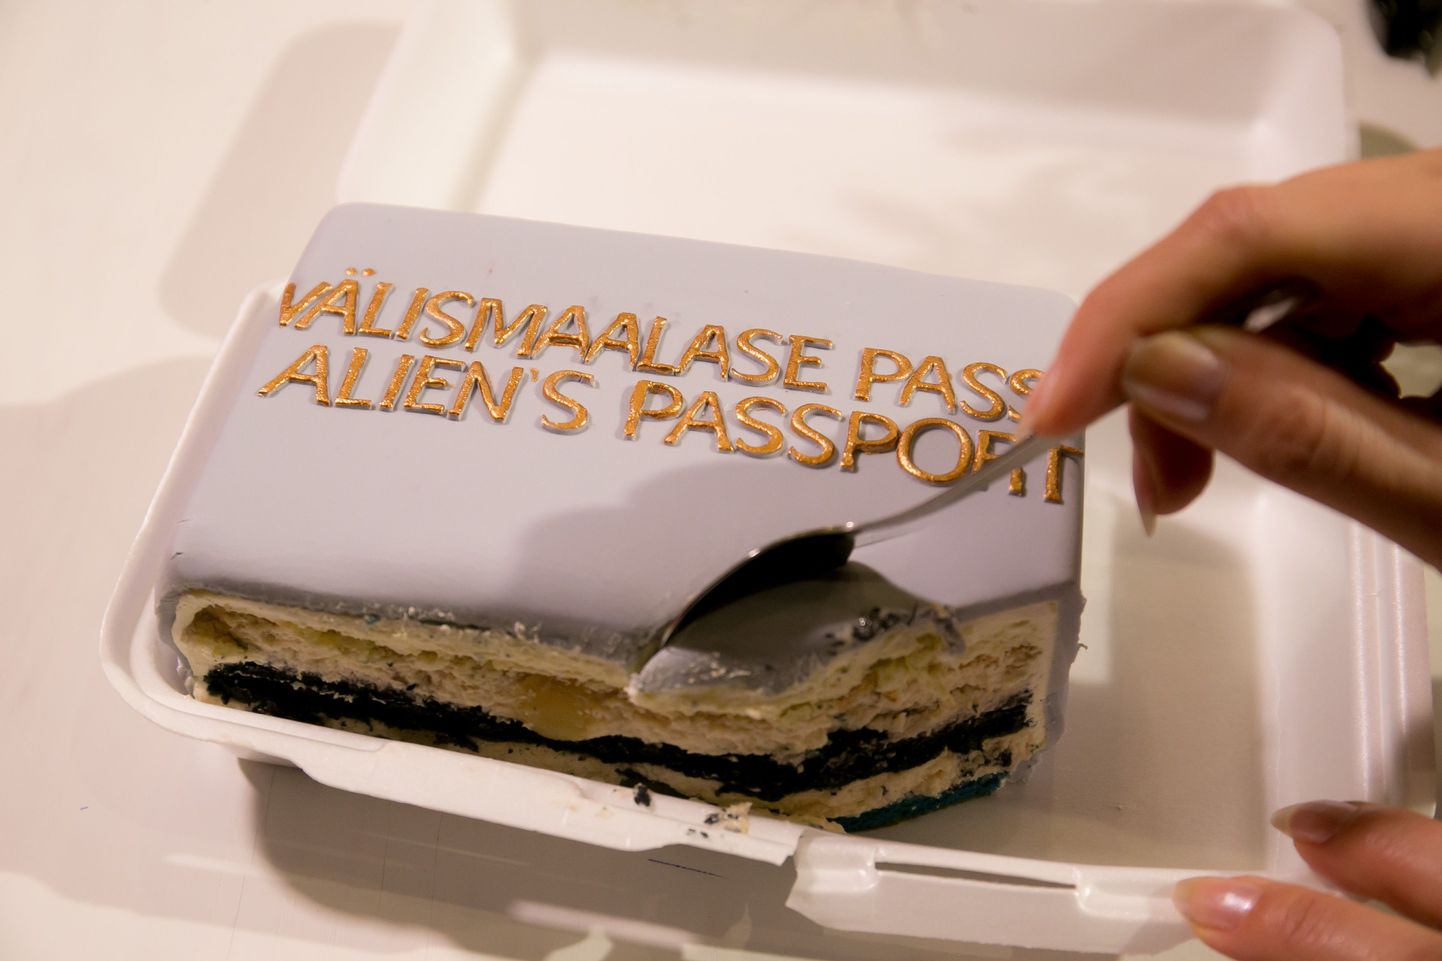 В 2016 году Яна Тоом принесла в редакцию Postimees торт с надписью "Паспорт иностранца".